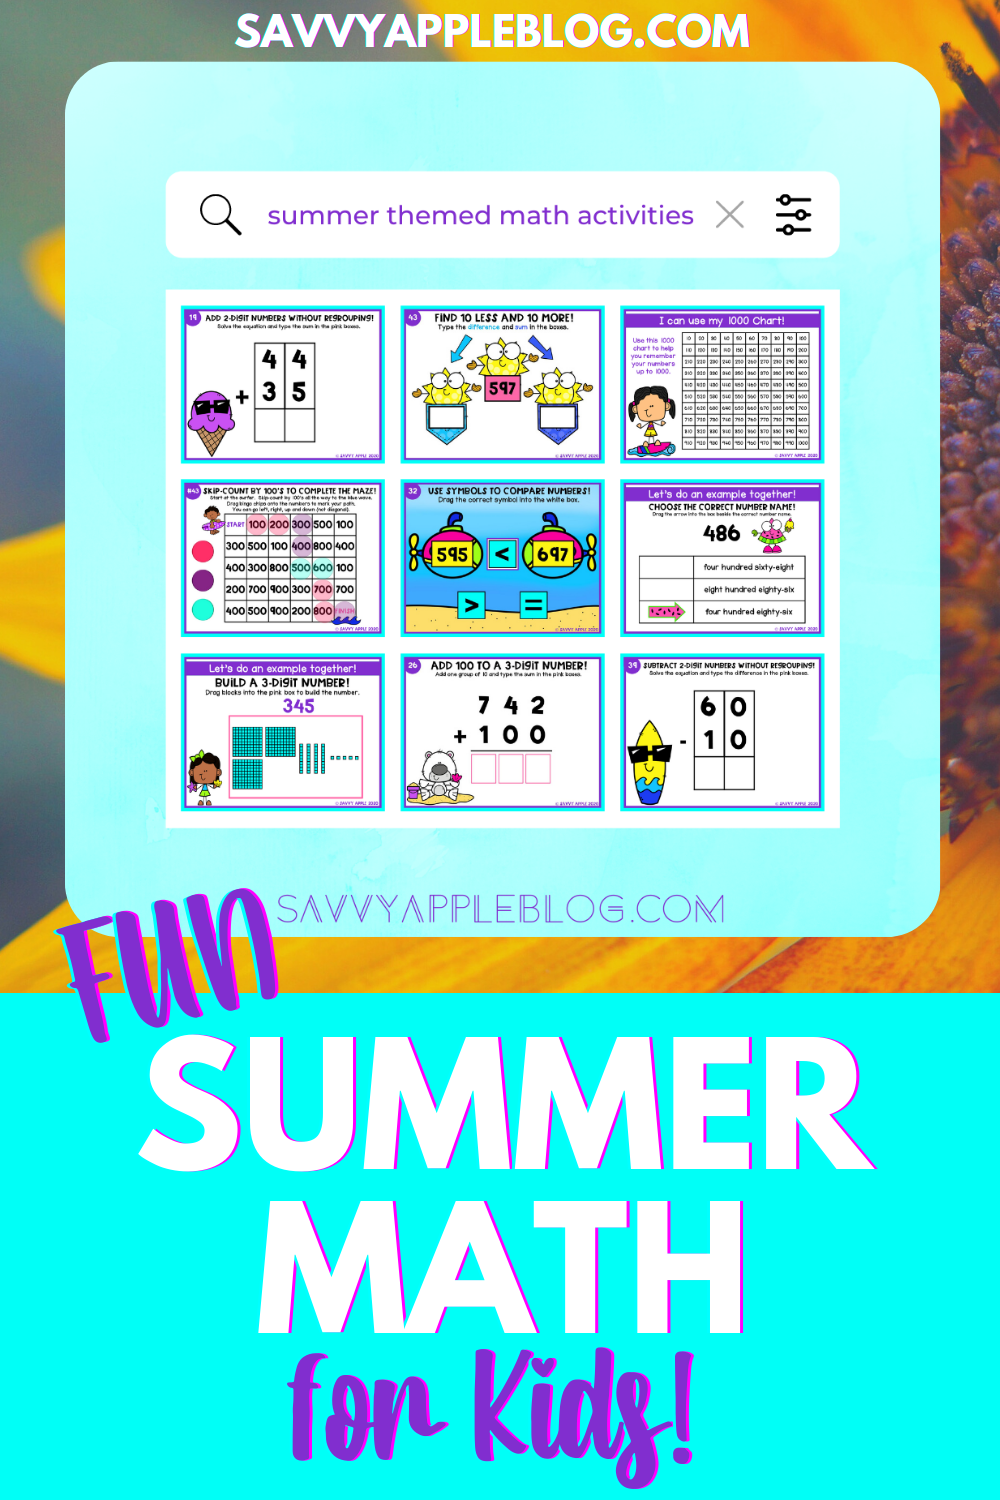 summertime-math